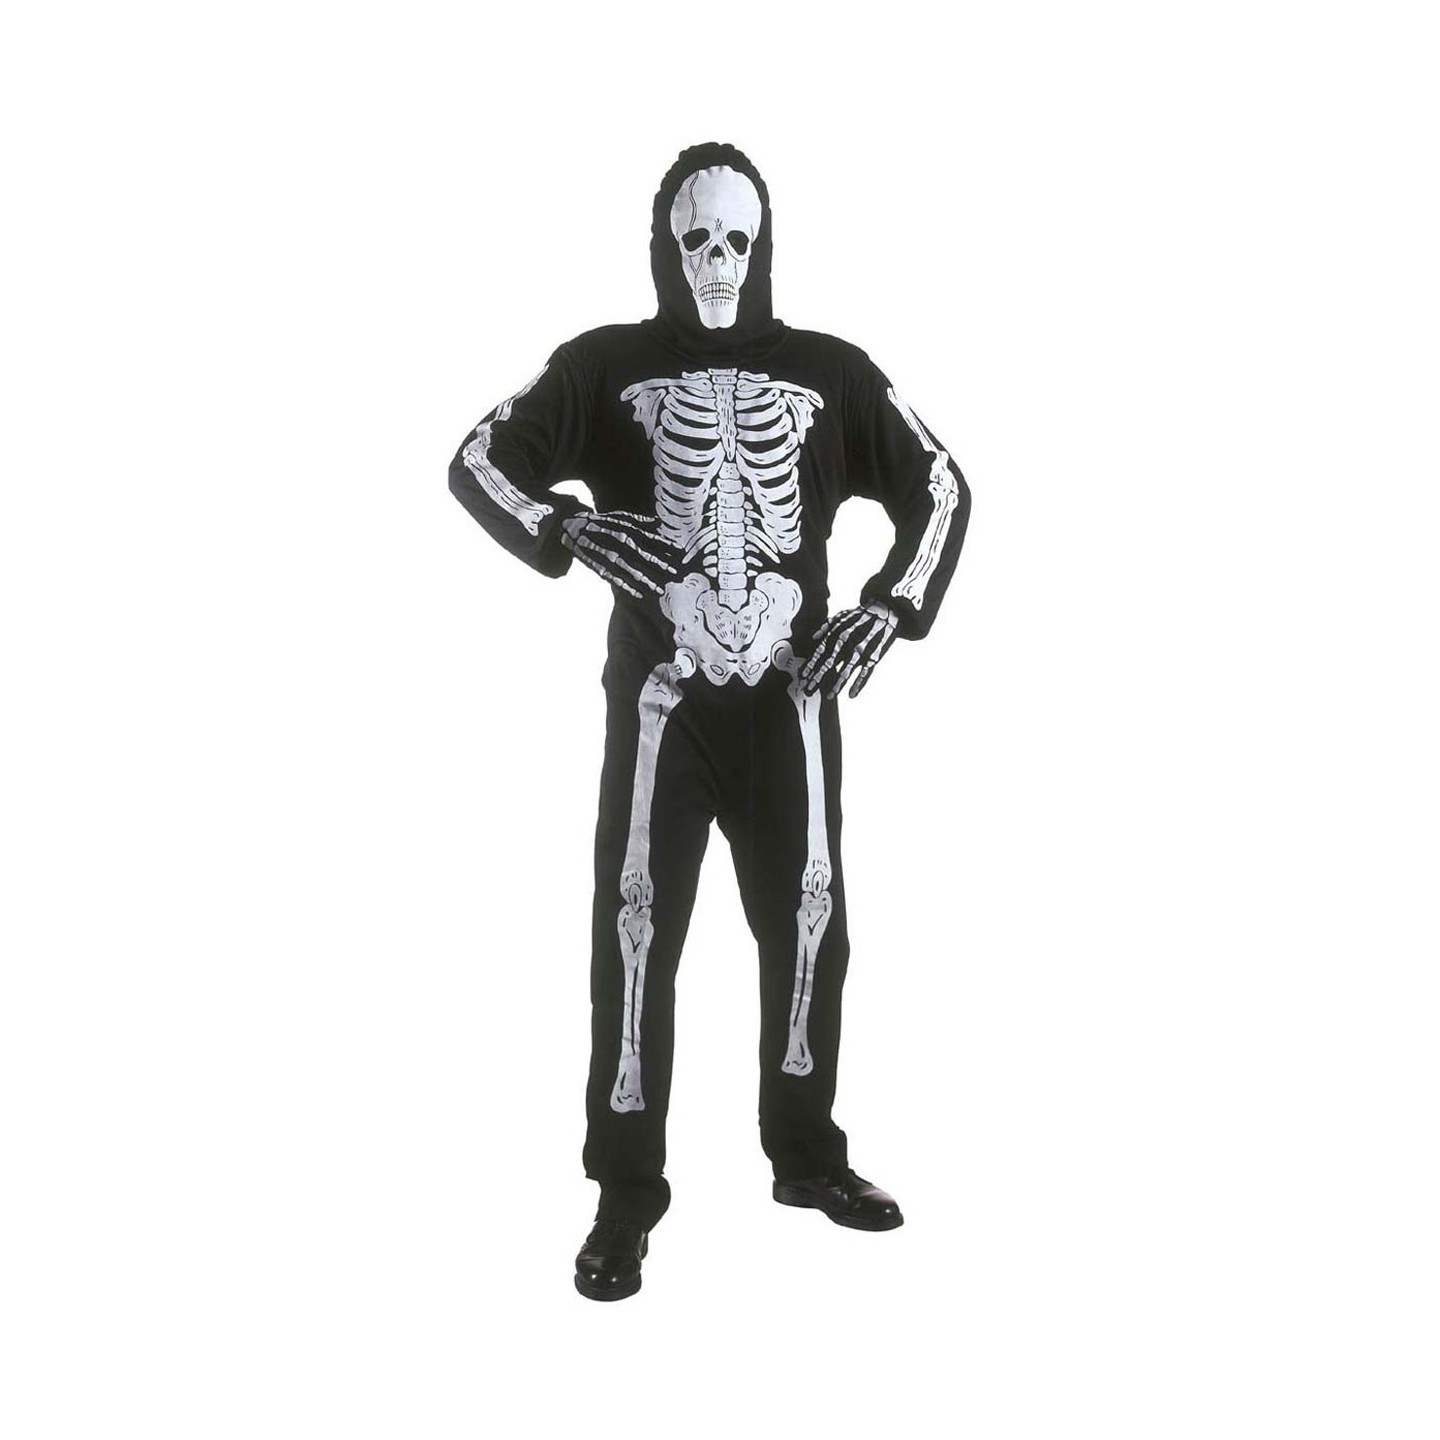 Contractie cent Frustrerend Skelet pak kind bestellen ? | Jokershop.be - Halloween kostuums